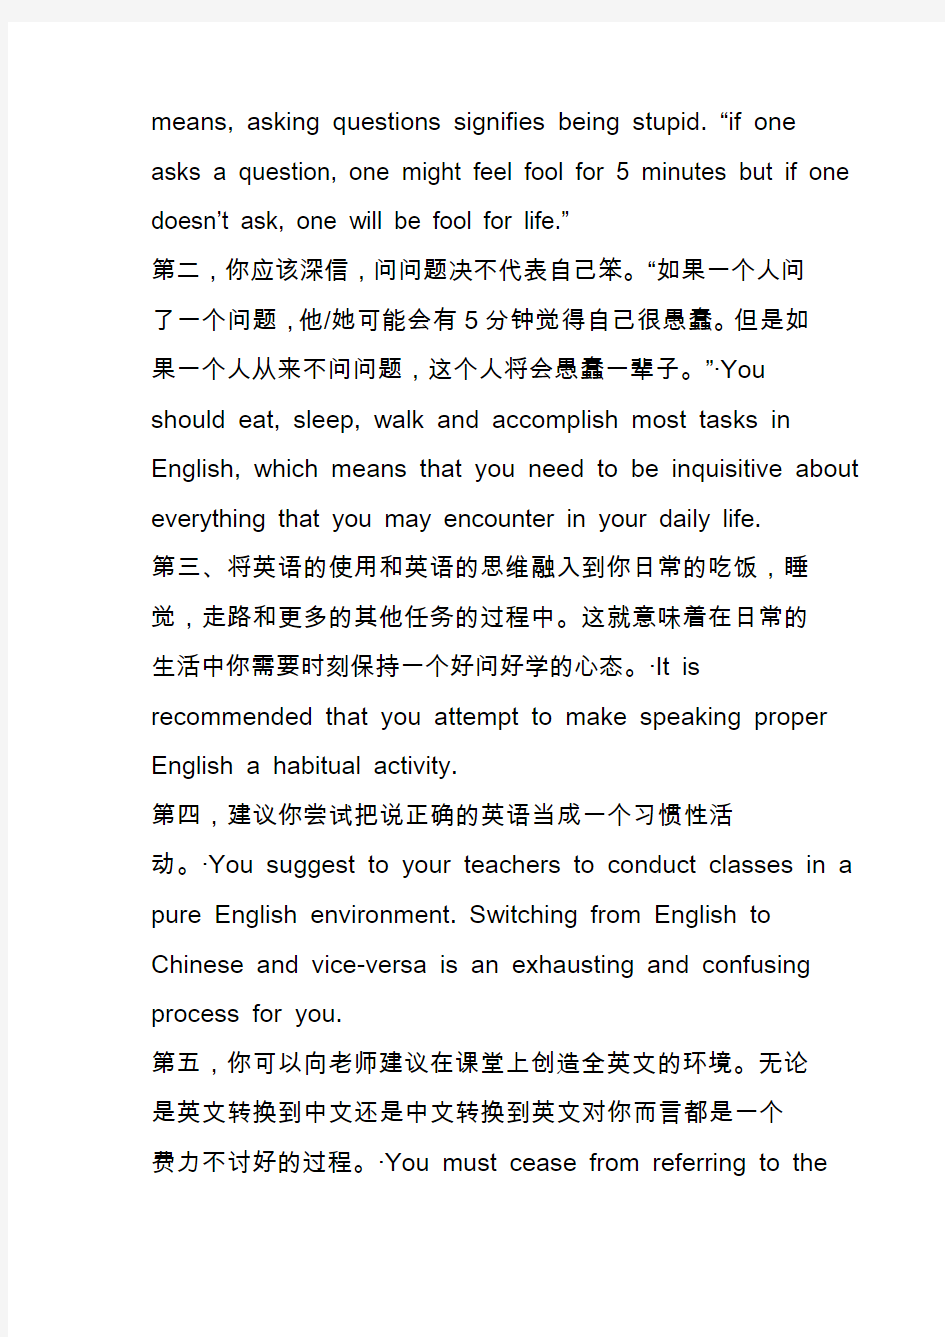 外教给中国学生的英语学习建议(Suggestions to enhance your English skills)